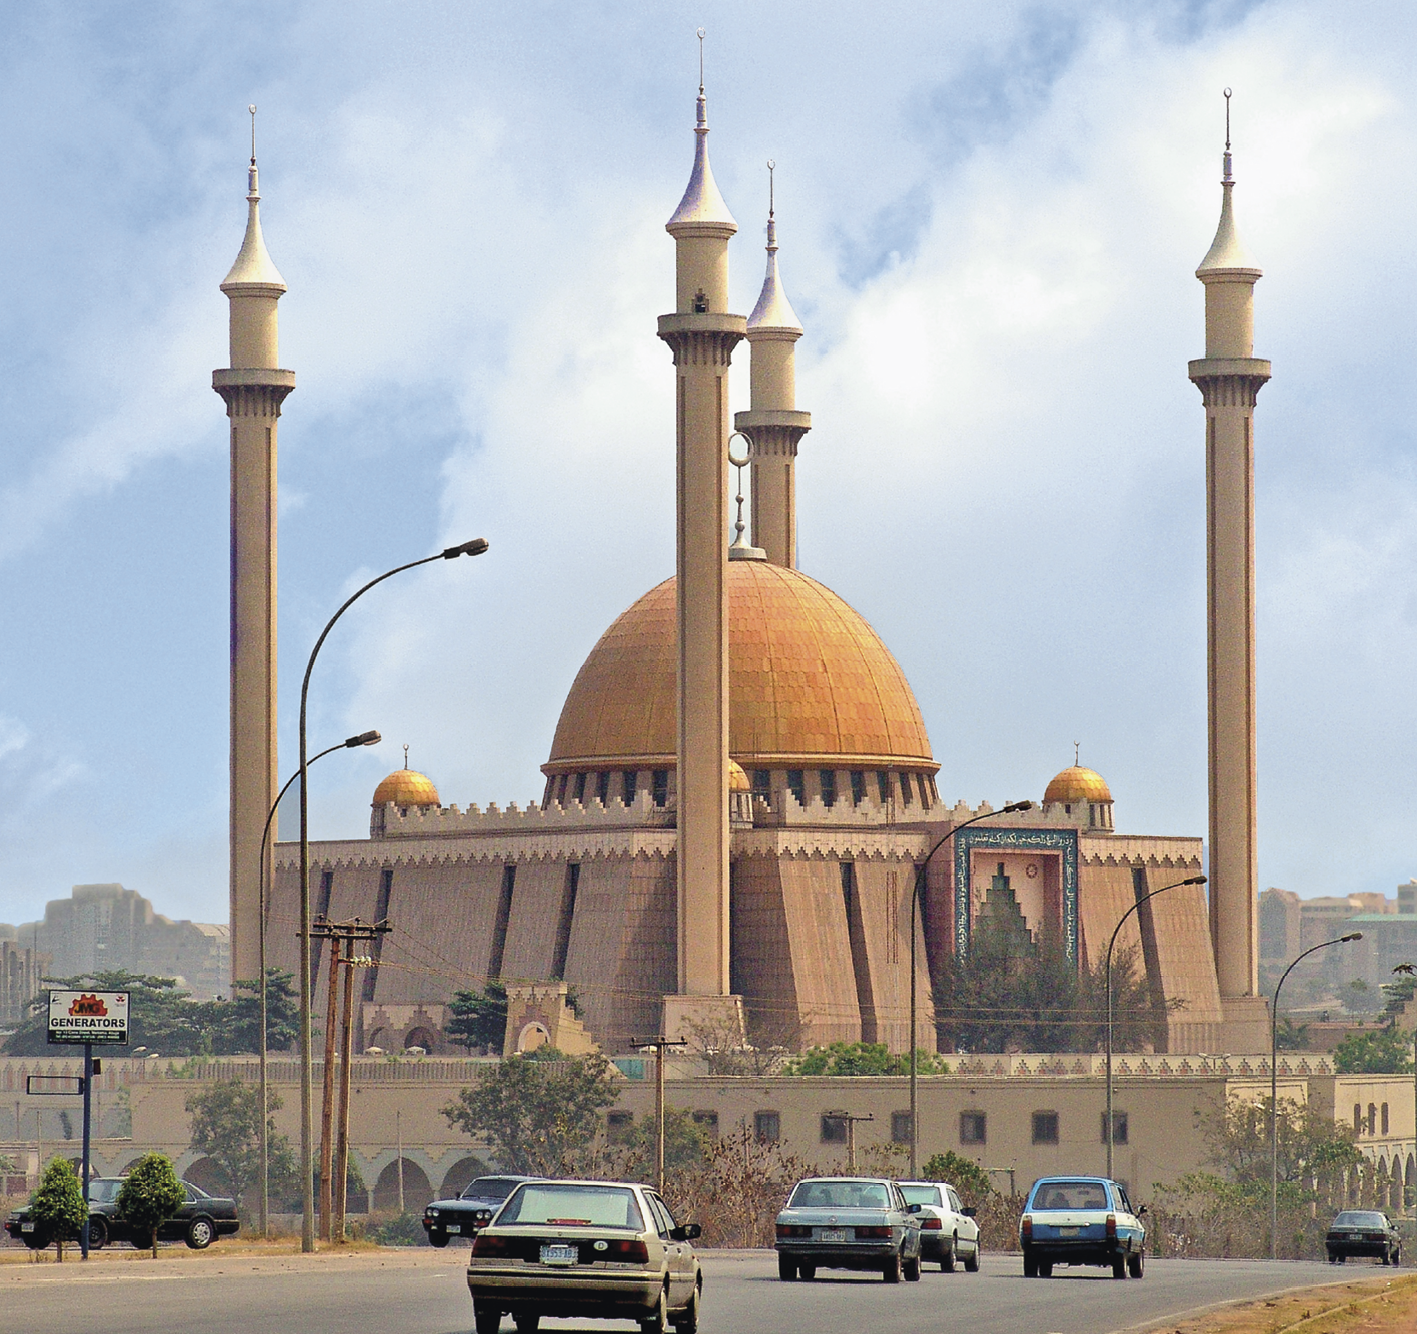 Fotografia. Ao fundo, uma mesquita tradicional, rodeada por uma muralha e construções pontudas. À frente, carros em uma rodovia.